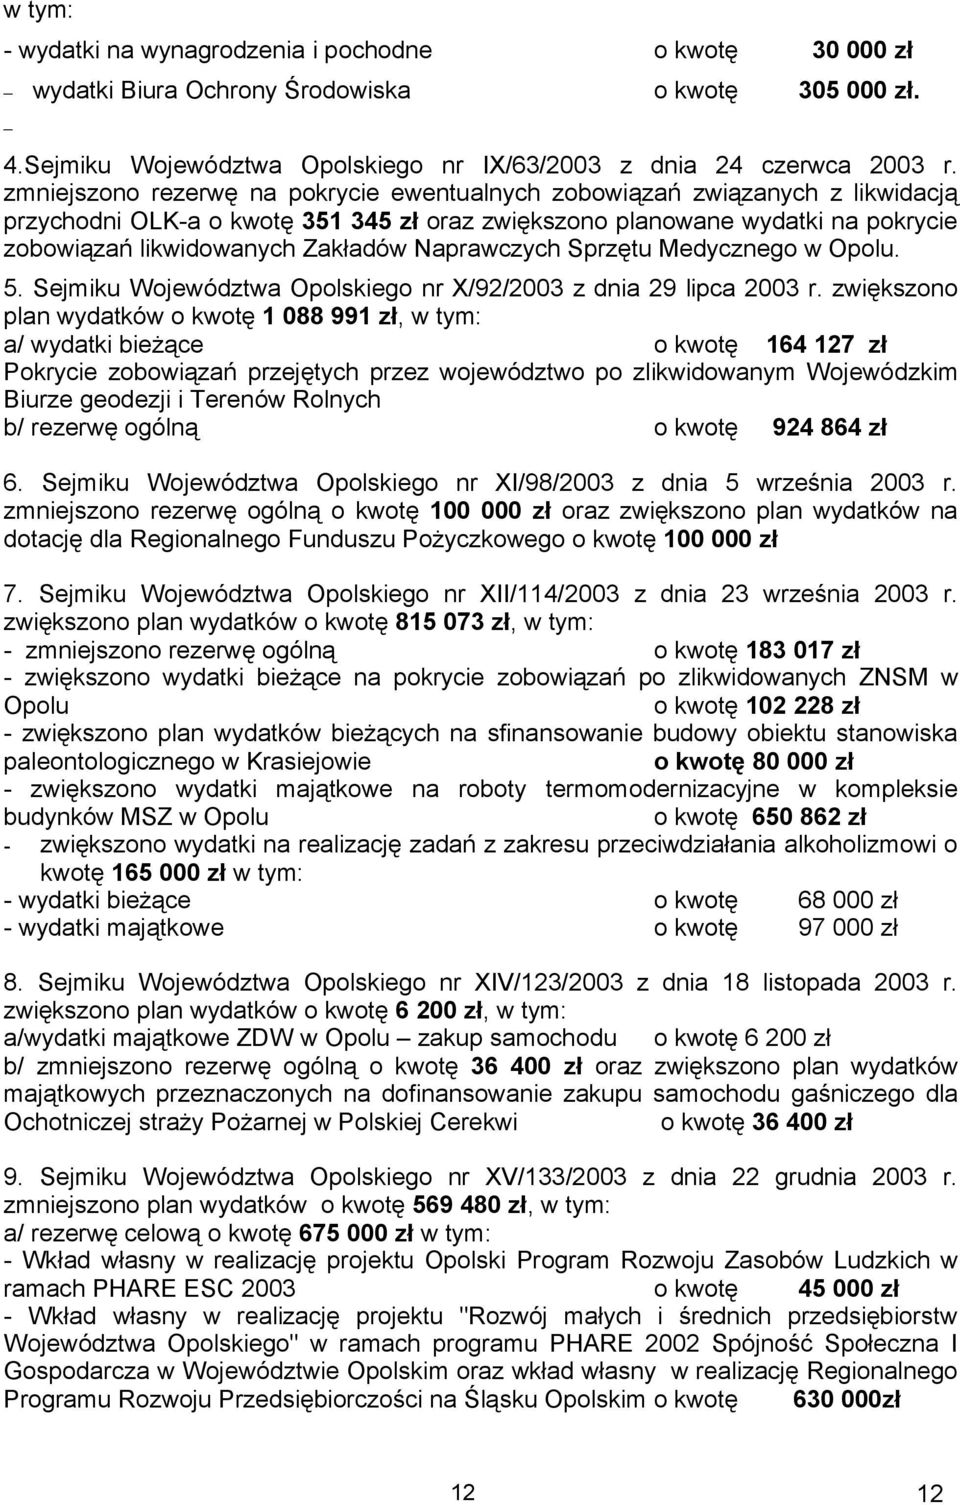 Naprawczych Sprzętu Medycznego w Opolu. 5. Sejmiku Województwa Opolskiego nr X/92/2003 z dnia 29 lipca 2003 r.